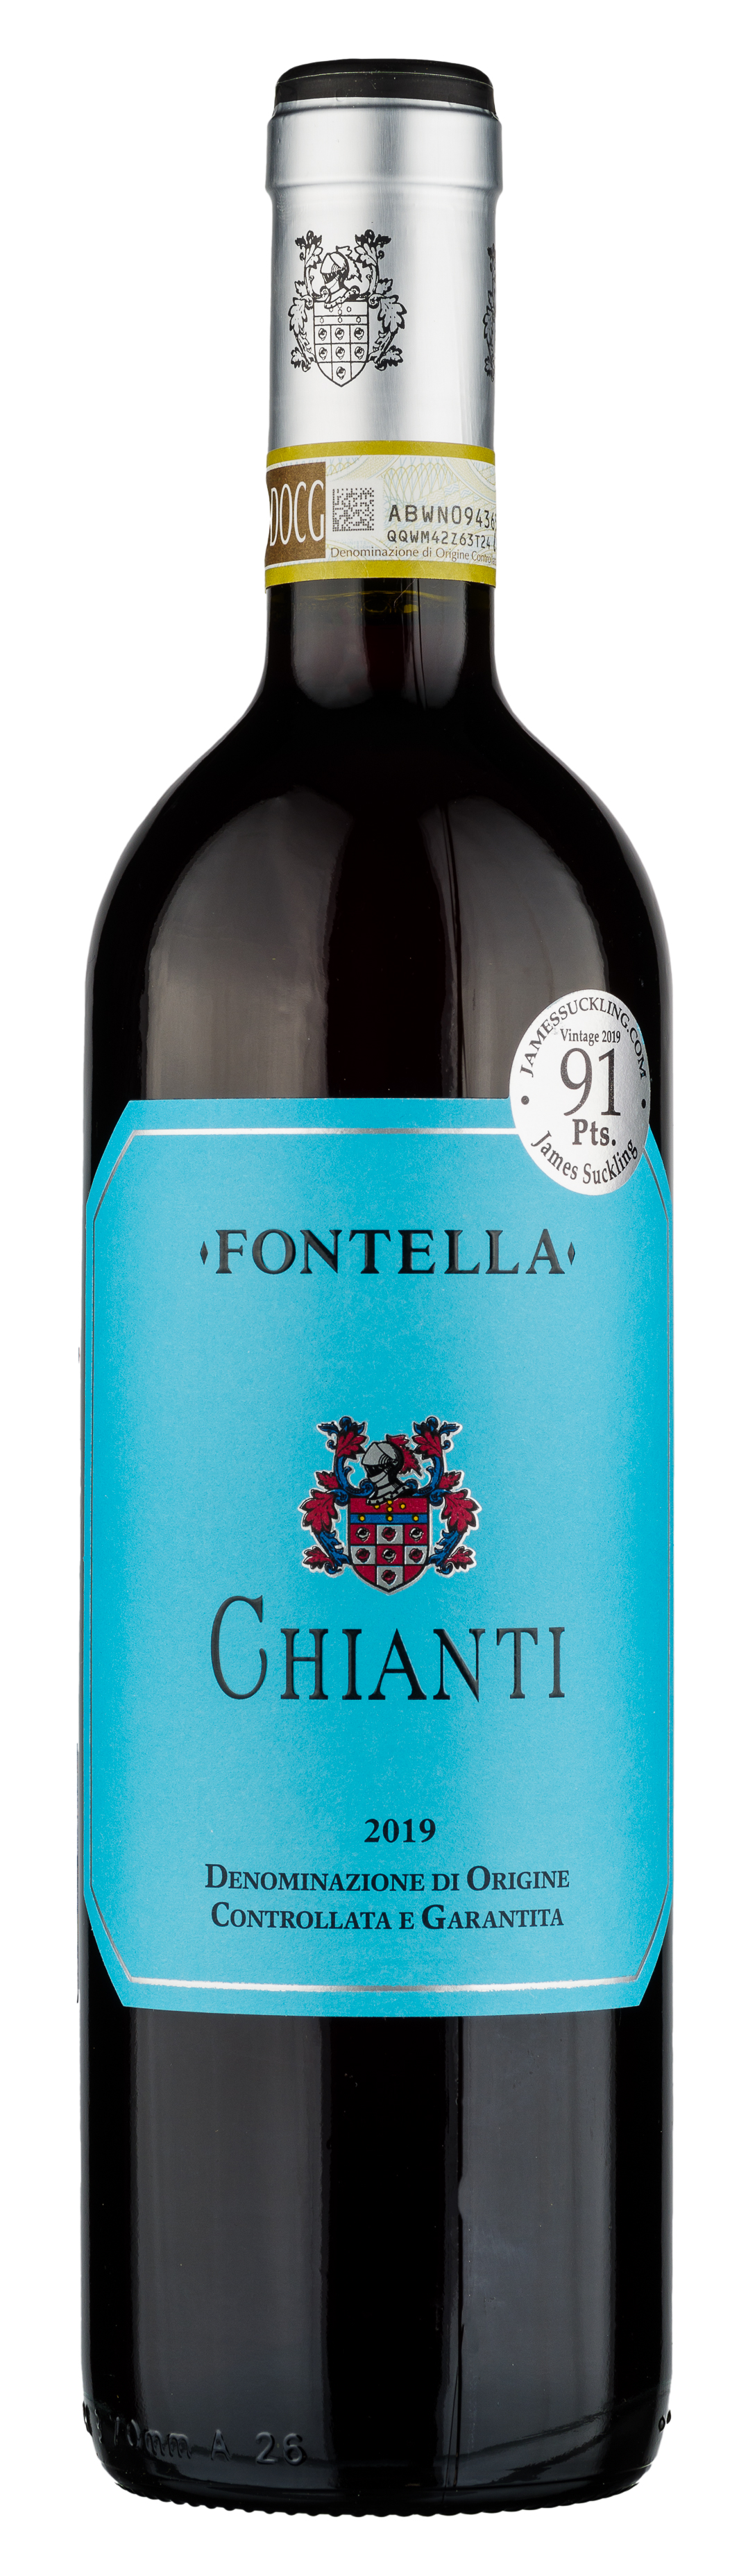 Wine Fontella Chianti